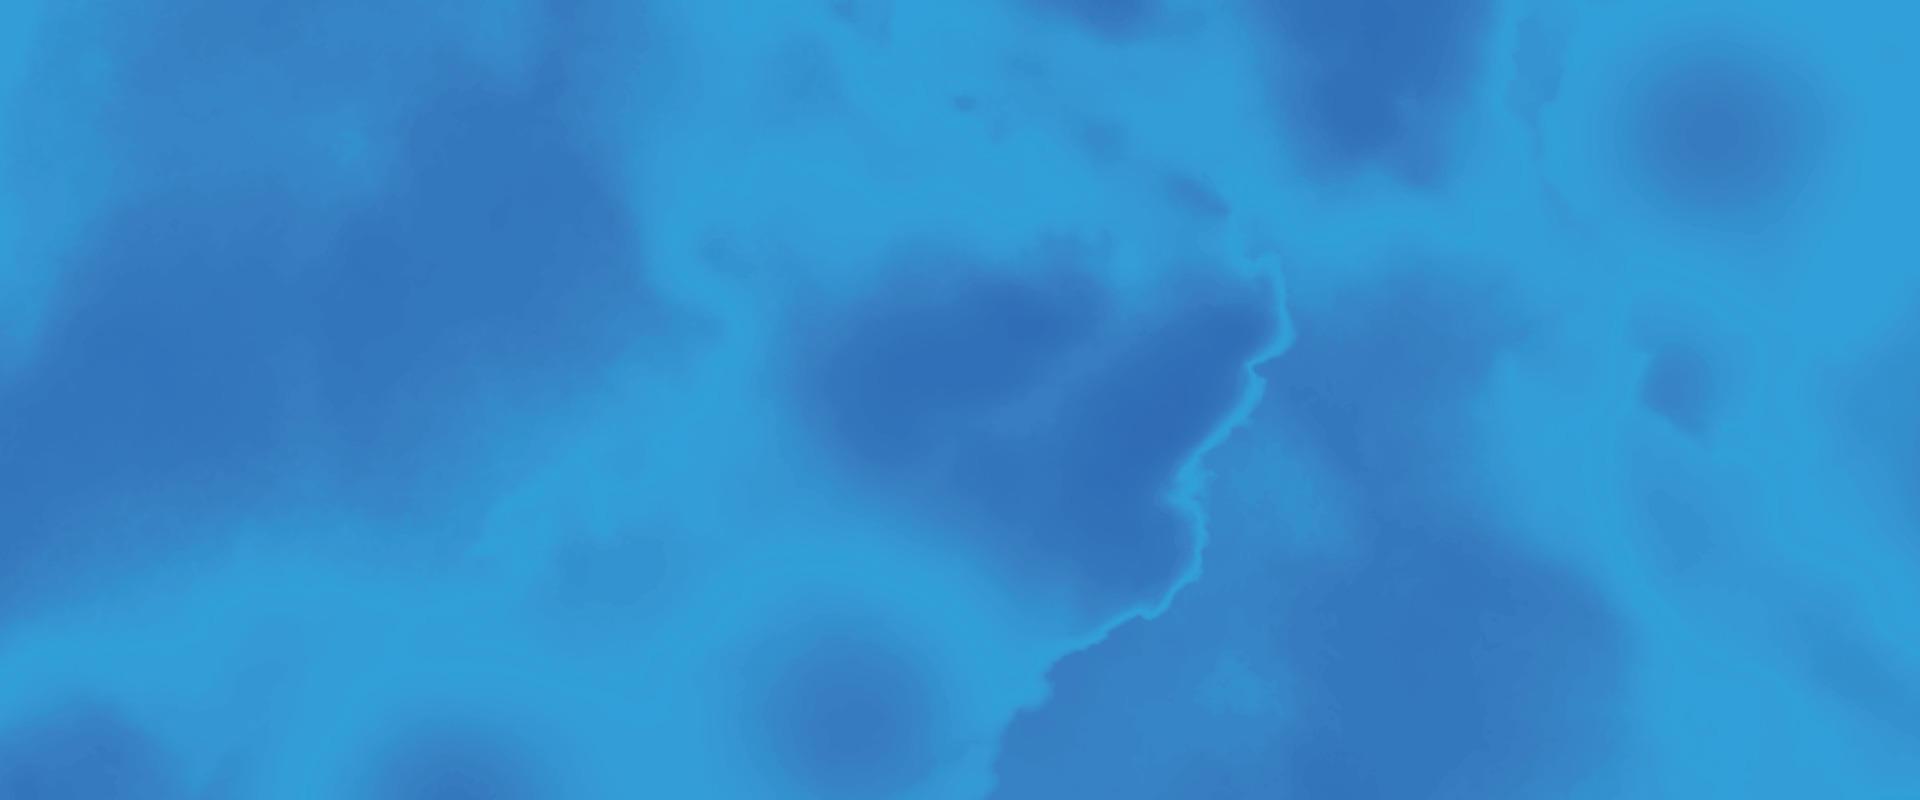 blauw waterverf en papier textuur. mooi donker helling hand- getrokken door borstel grunge achtergrond. waterverf wassen aqua geschilderd structuur dichtbij omhoog, grungy ontwerp. blauw nevel fonkeling ster universum. vector